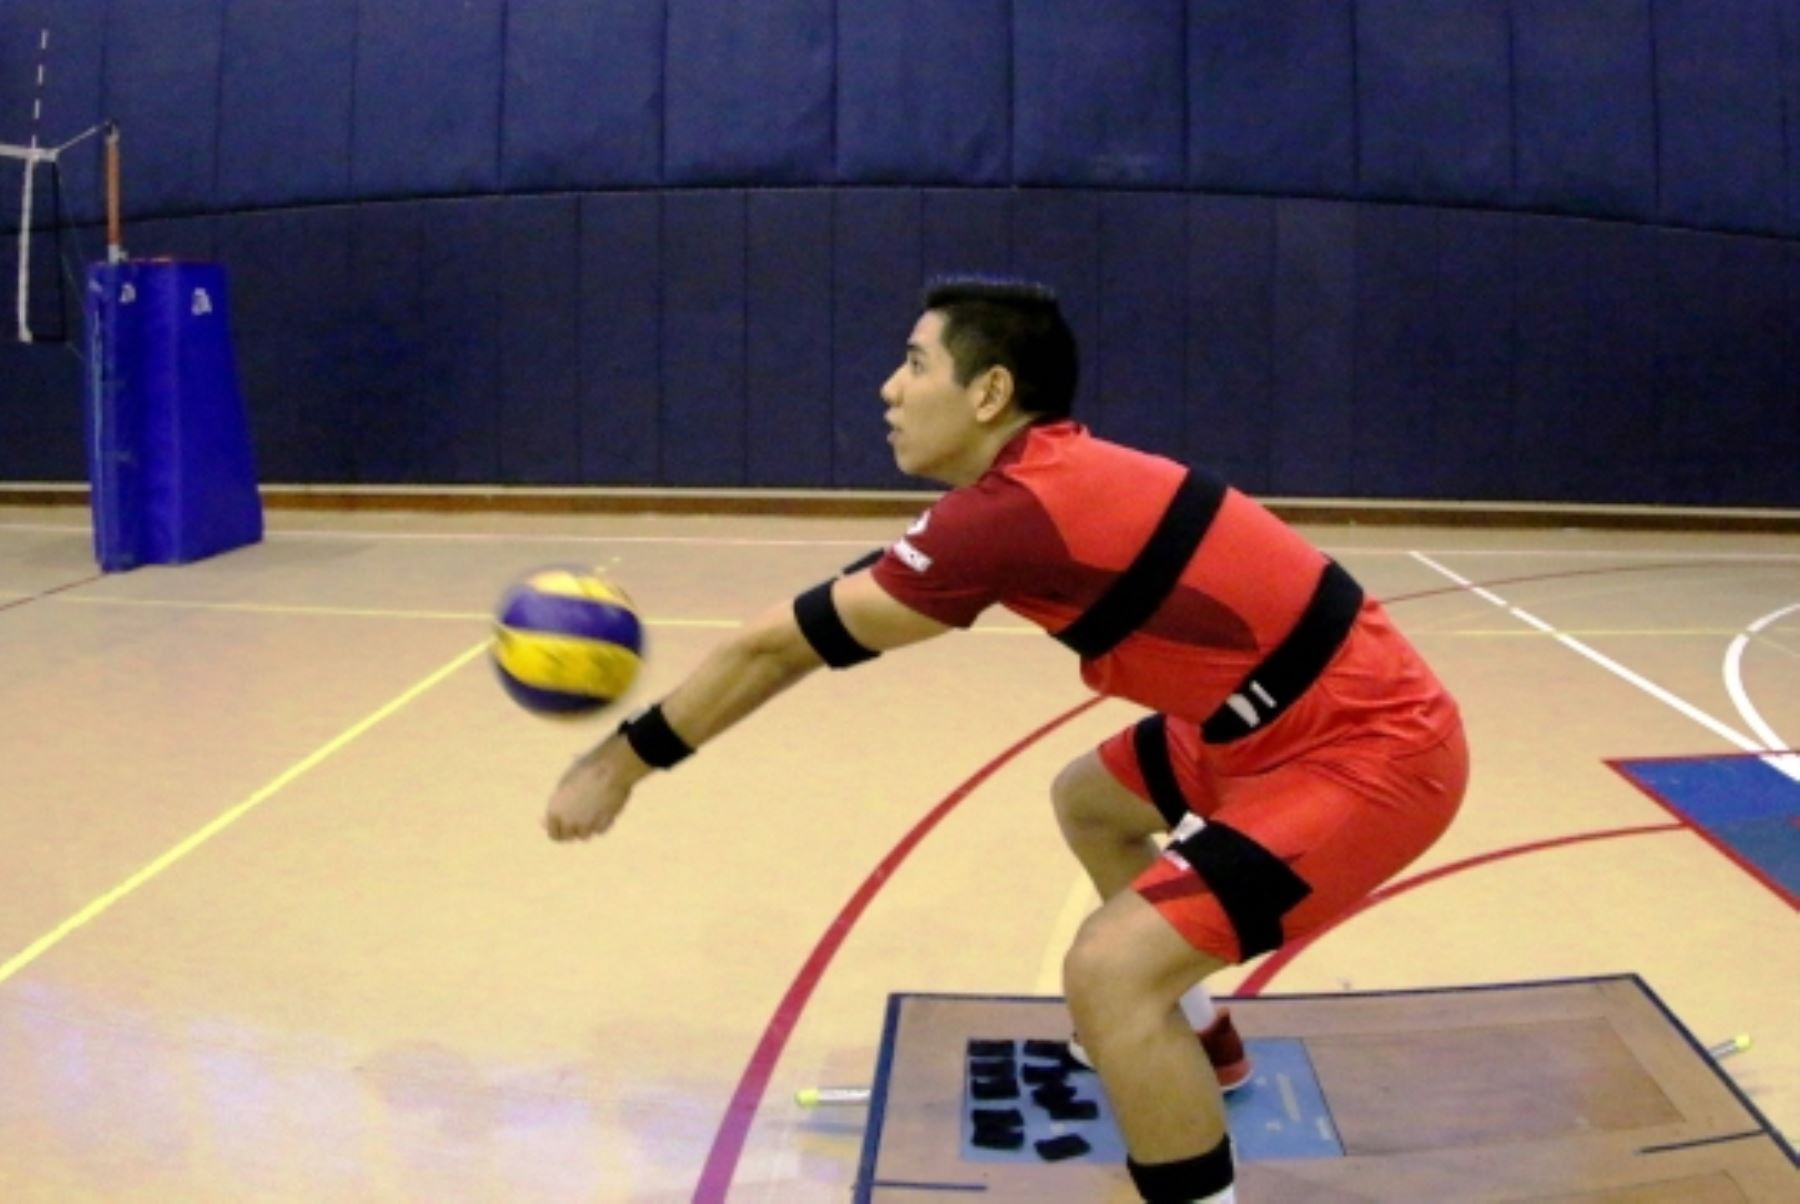 Desarrollan tecnología que permitirá mejorar rendimiento de voleibolistas. Foto: ANDINA/Difusión.